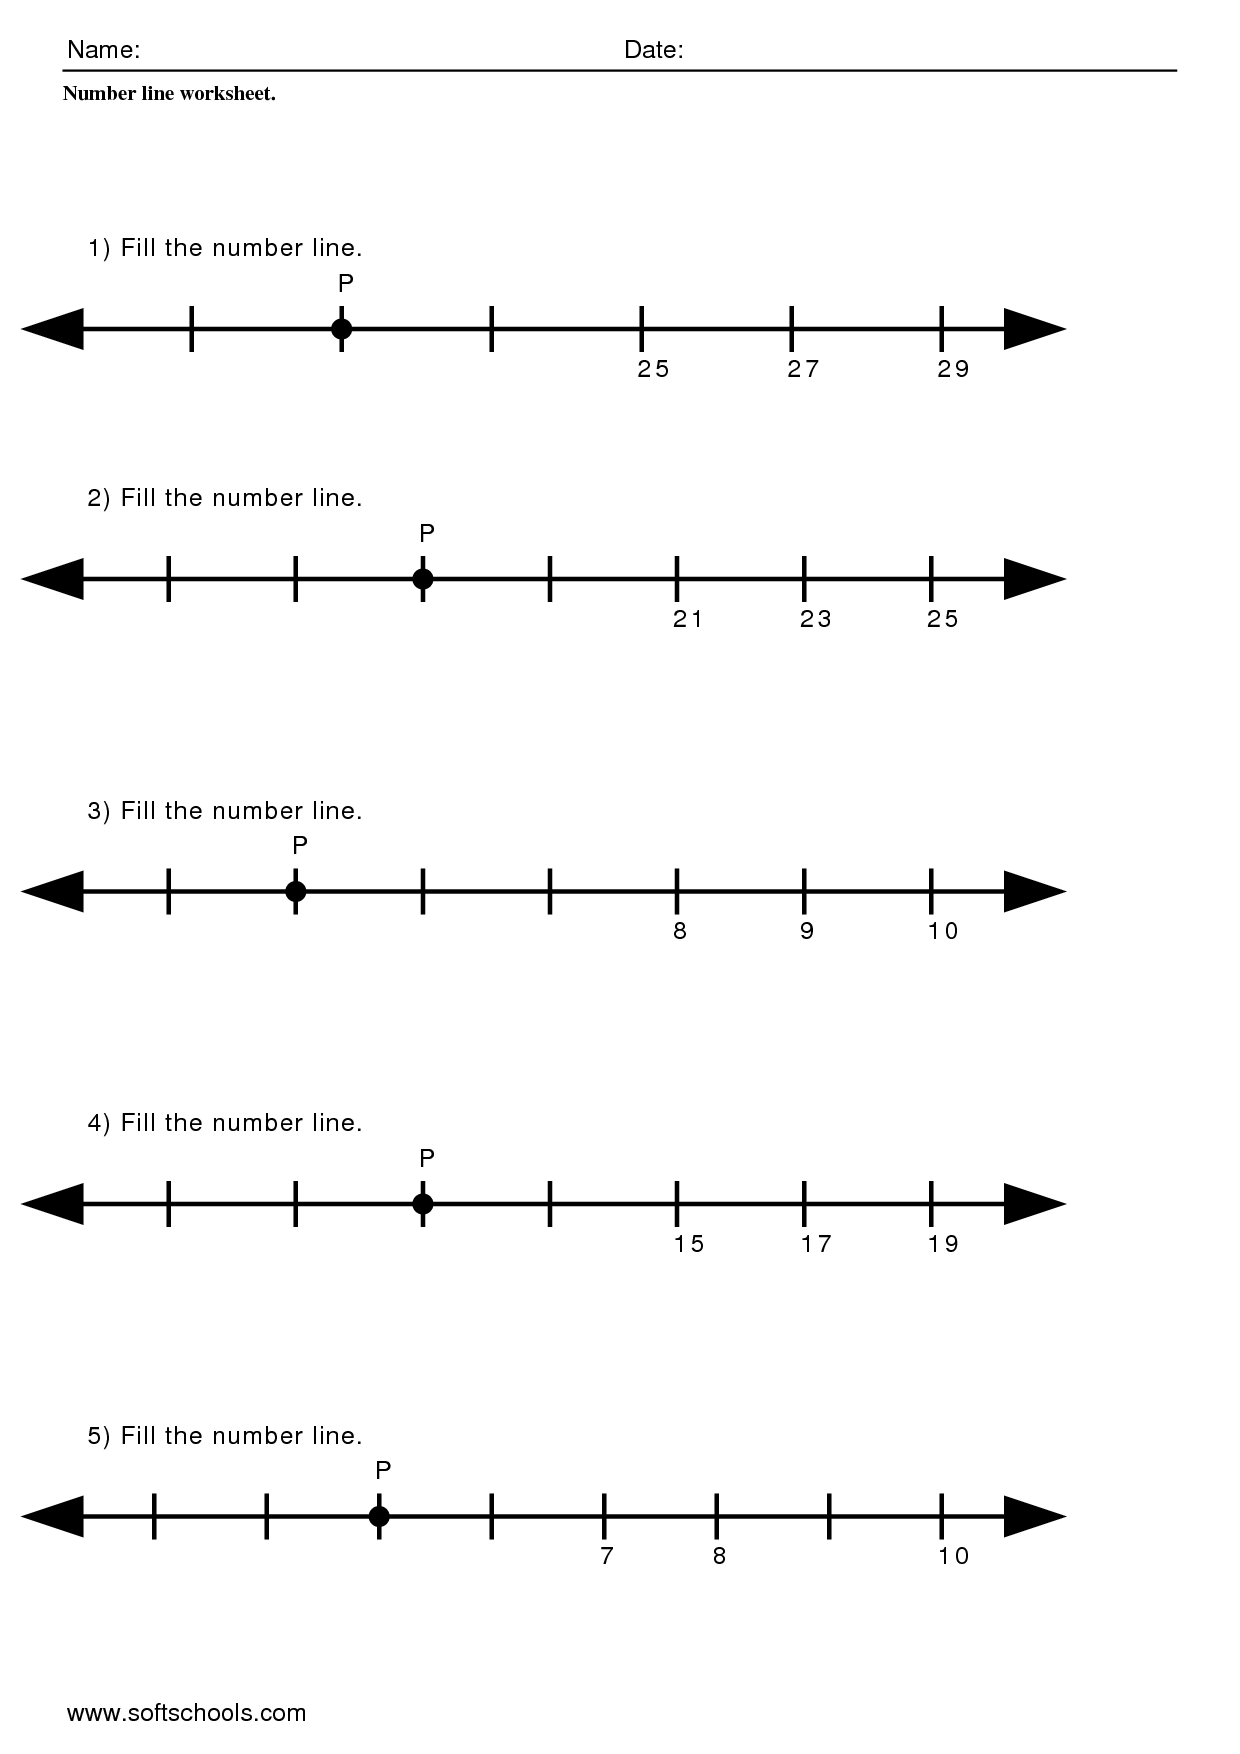 9 Images of Worksheets Fraction Number Line